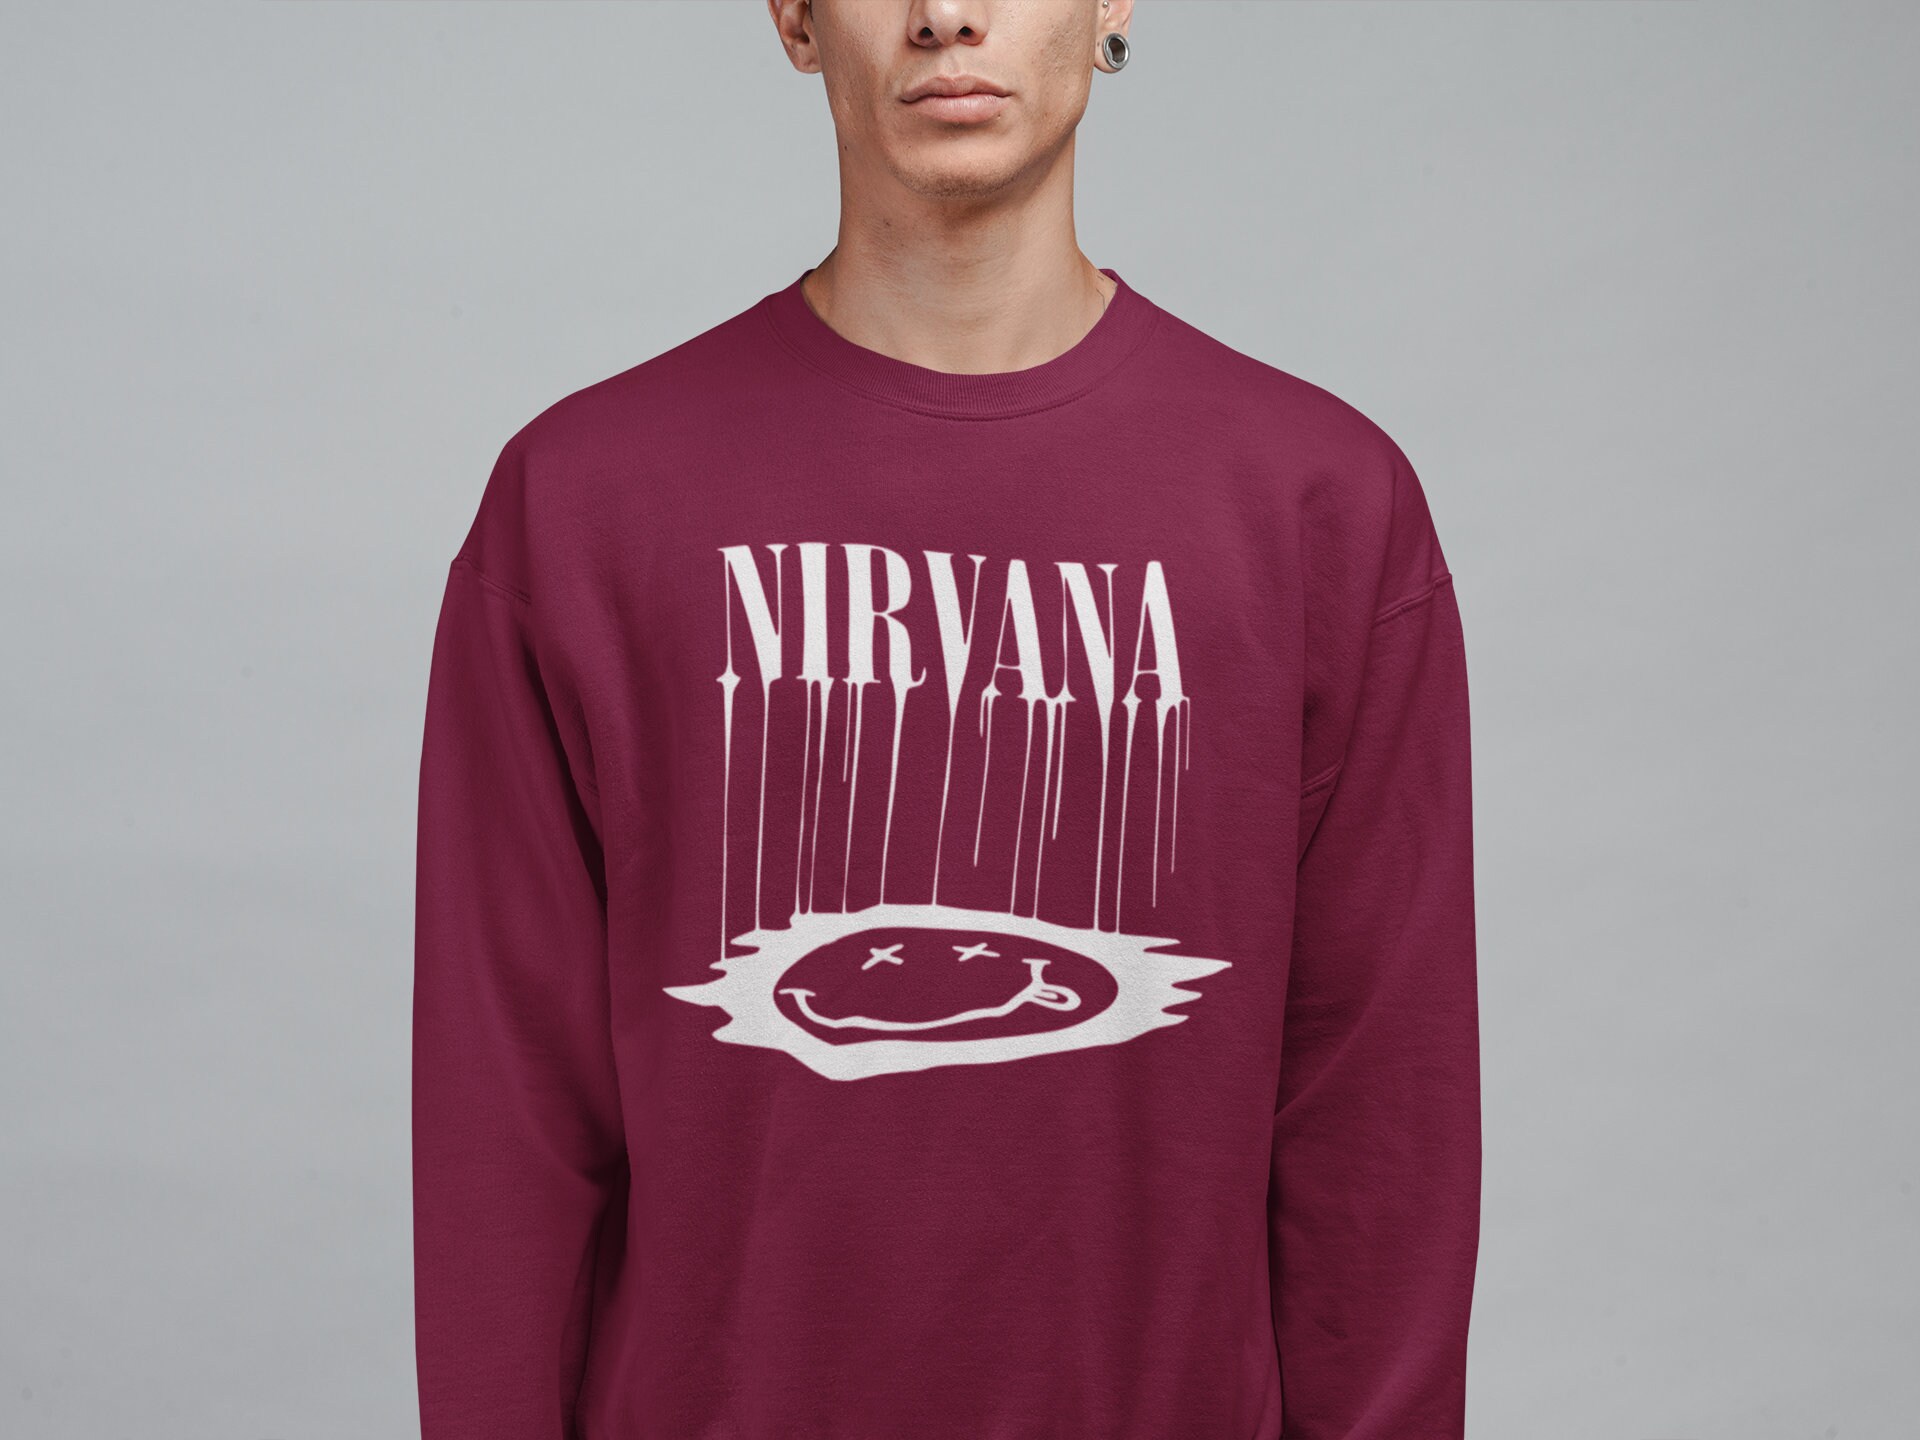 Nirvana Sweatshirt Vintage Band Sweatshirt Nirvana Band